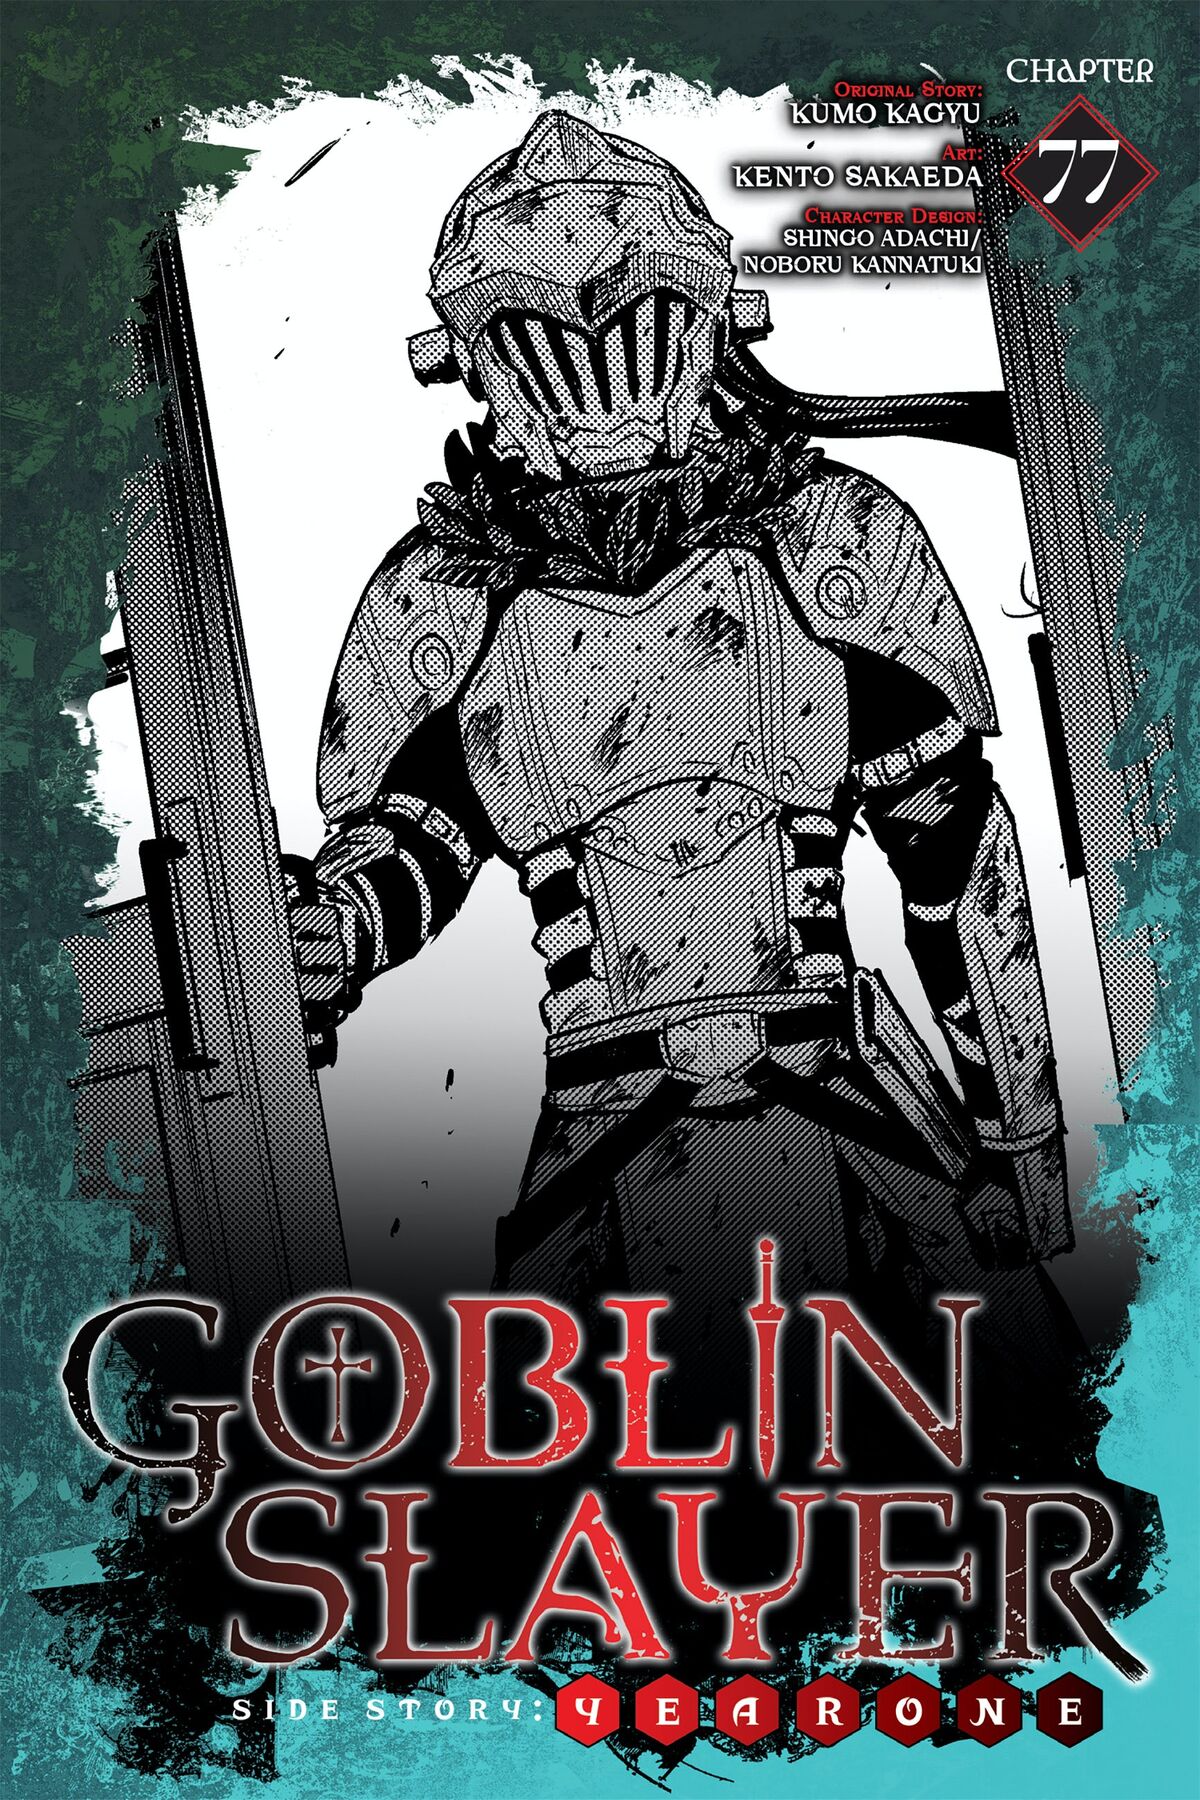 Goblin Slayer Season 2: Episode 1 Review  Kvasir 369's Anime, Manga, and  Game Blog